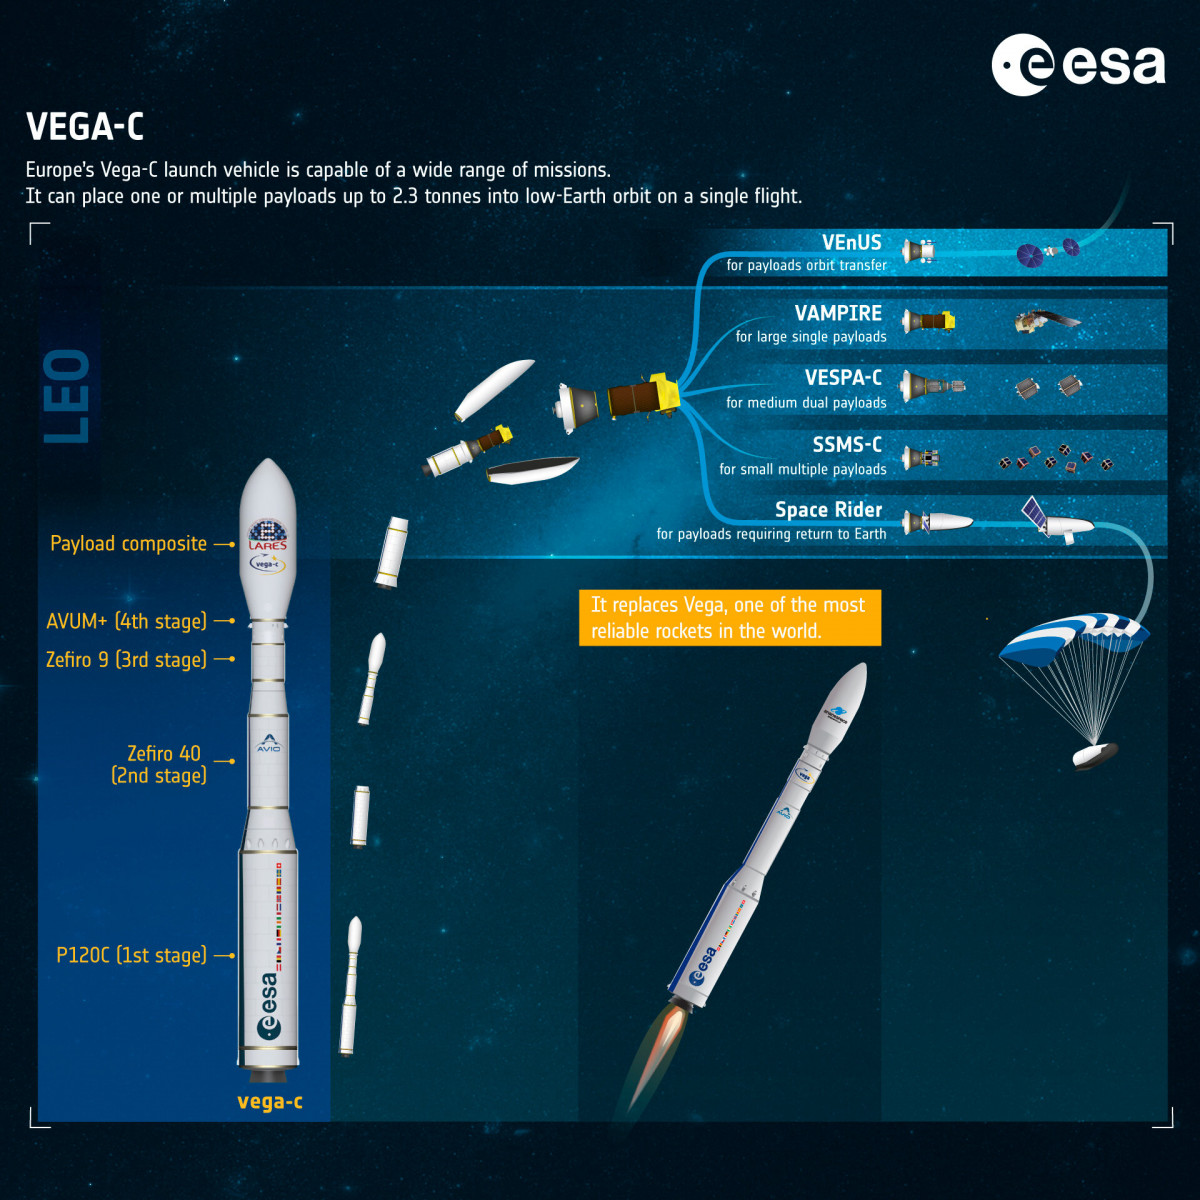 Vega C features ESA